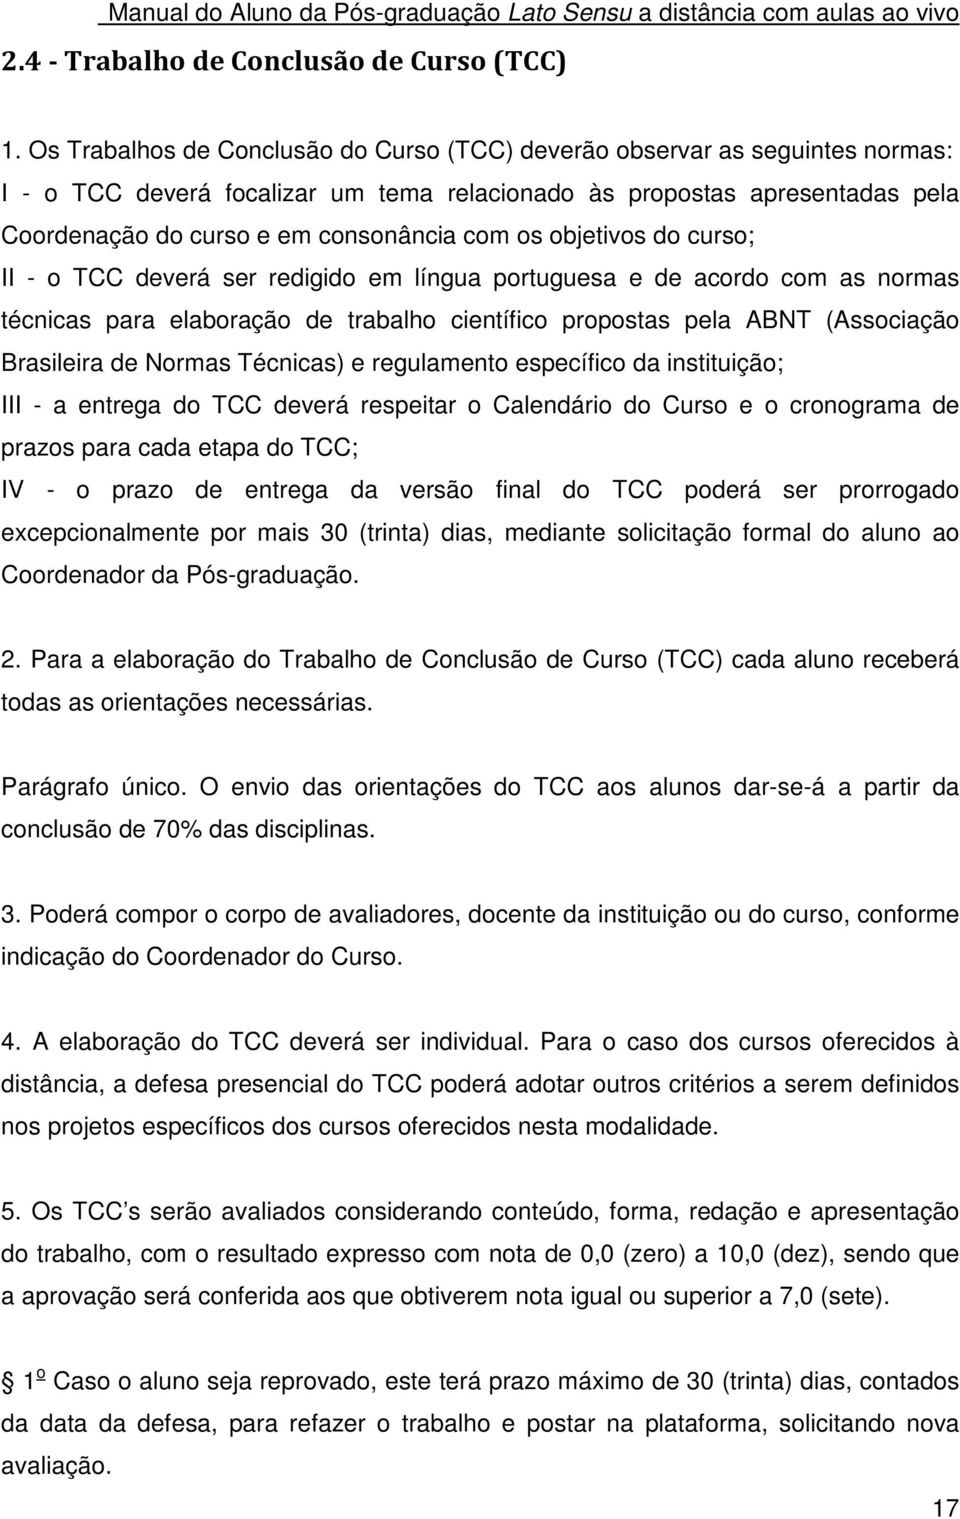 os objetivos do curso; II - o TCC deverá ser redigido em língua portuguesa e de acordo com as normas técnicas para elaboração de trabalho científico propostas pela ABNT (Associação Brasileira de